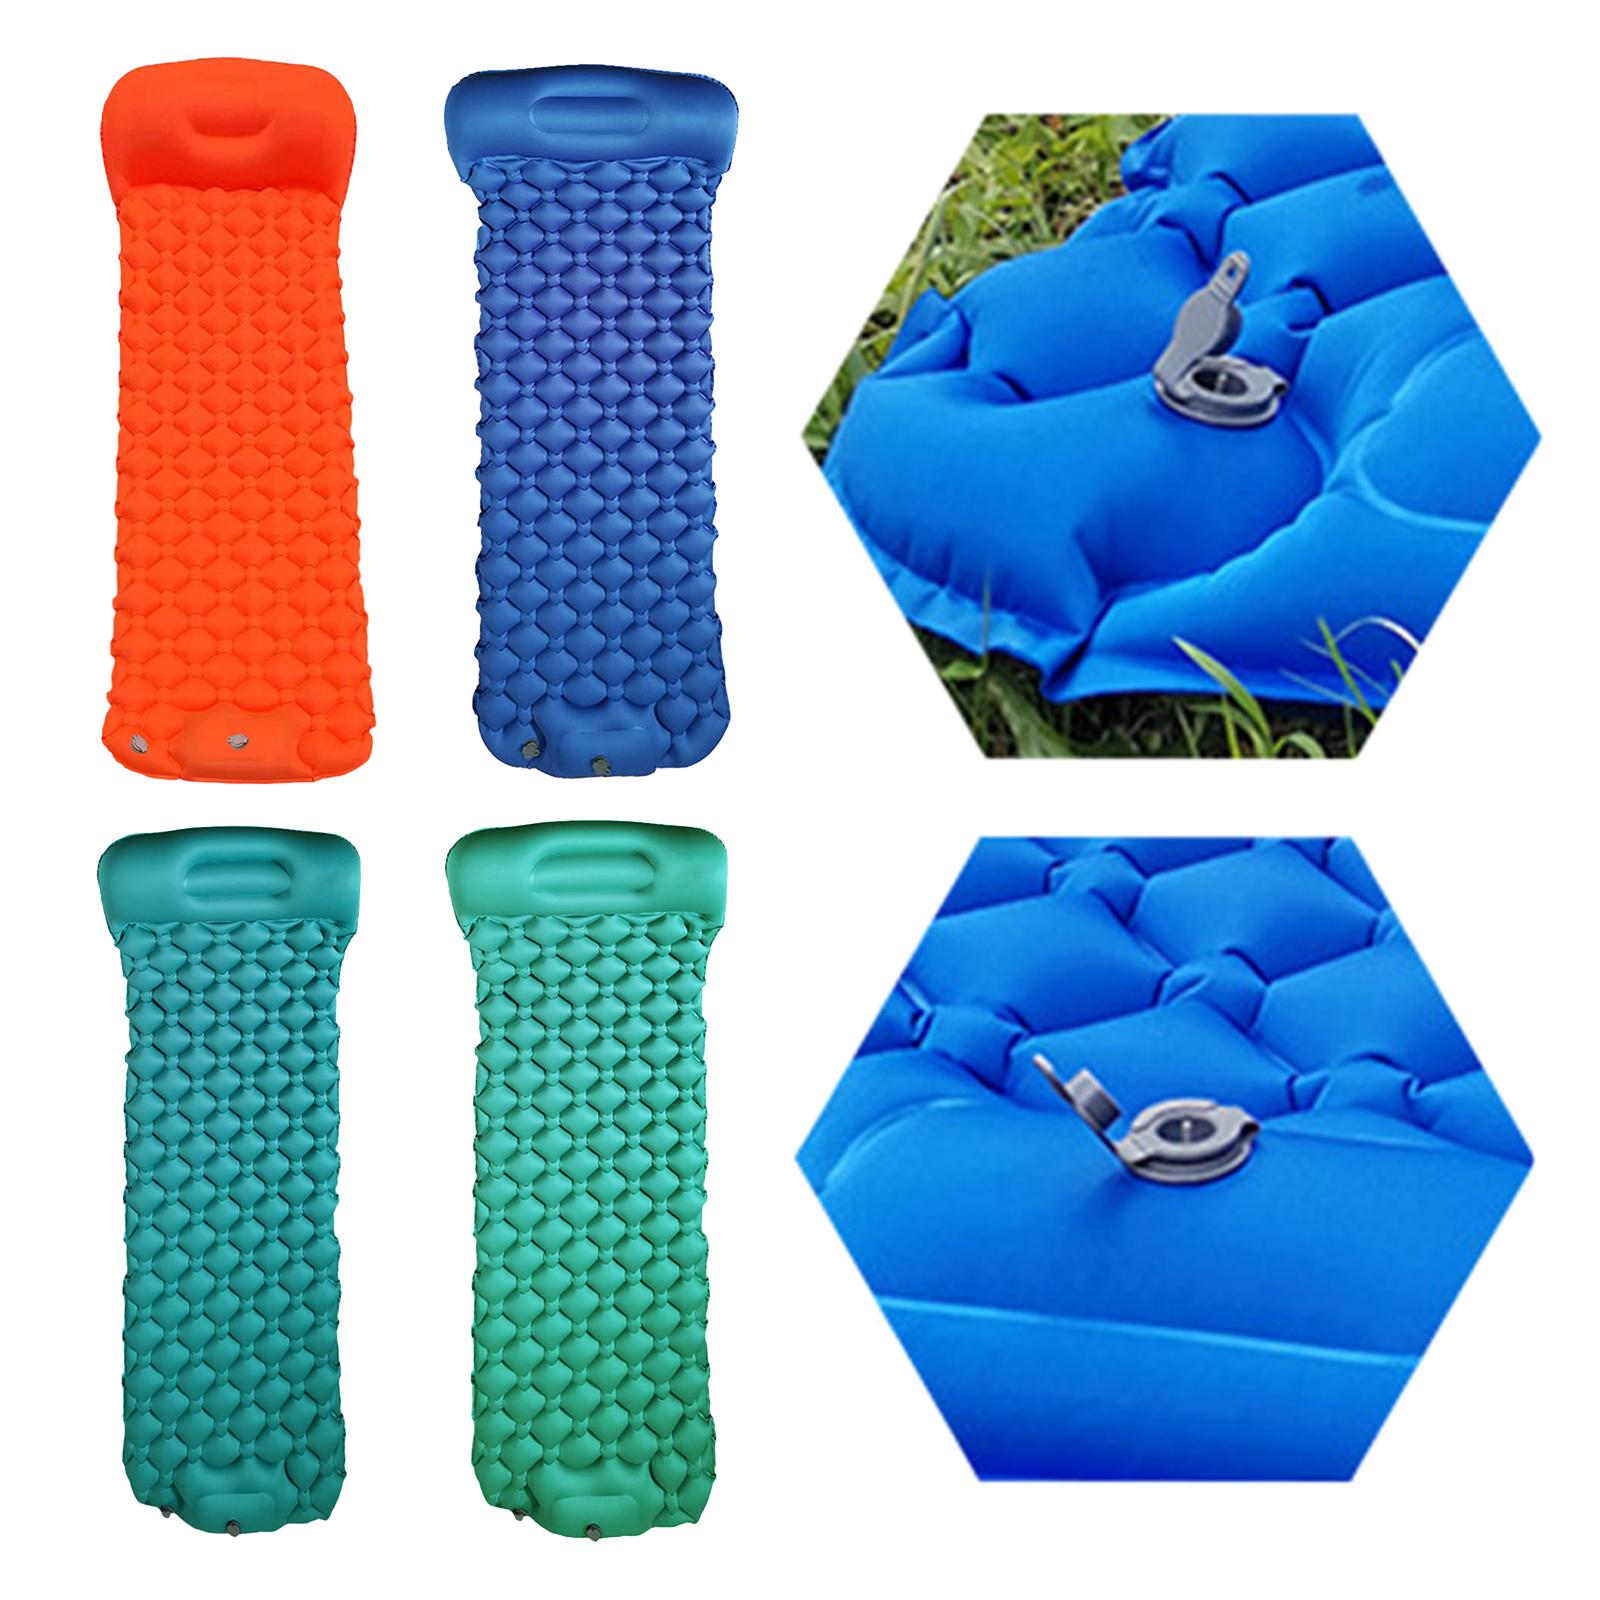 Camping Inflatable Sleeping Pad Tent Mat Cushion Air Mattress